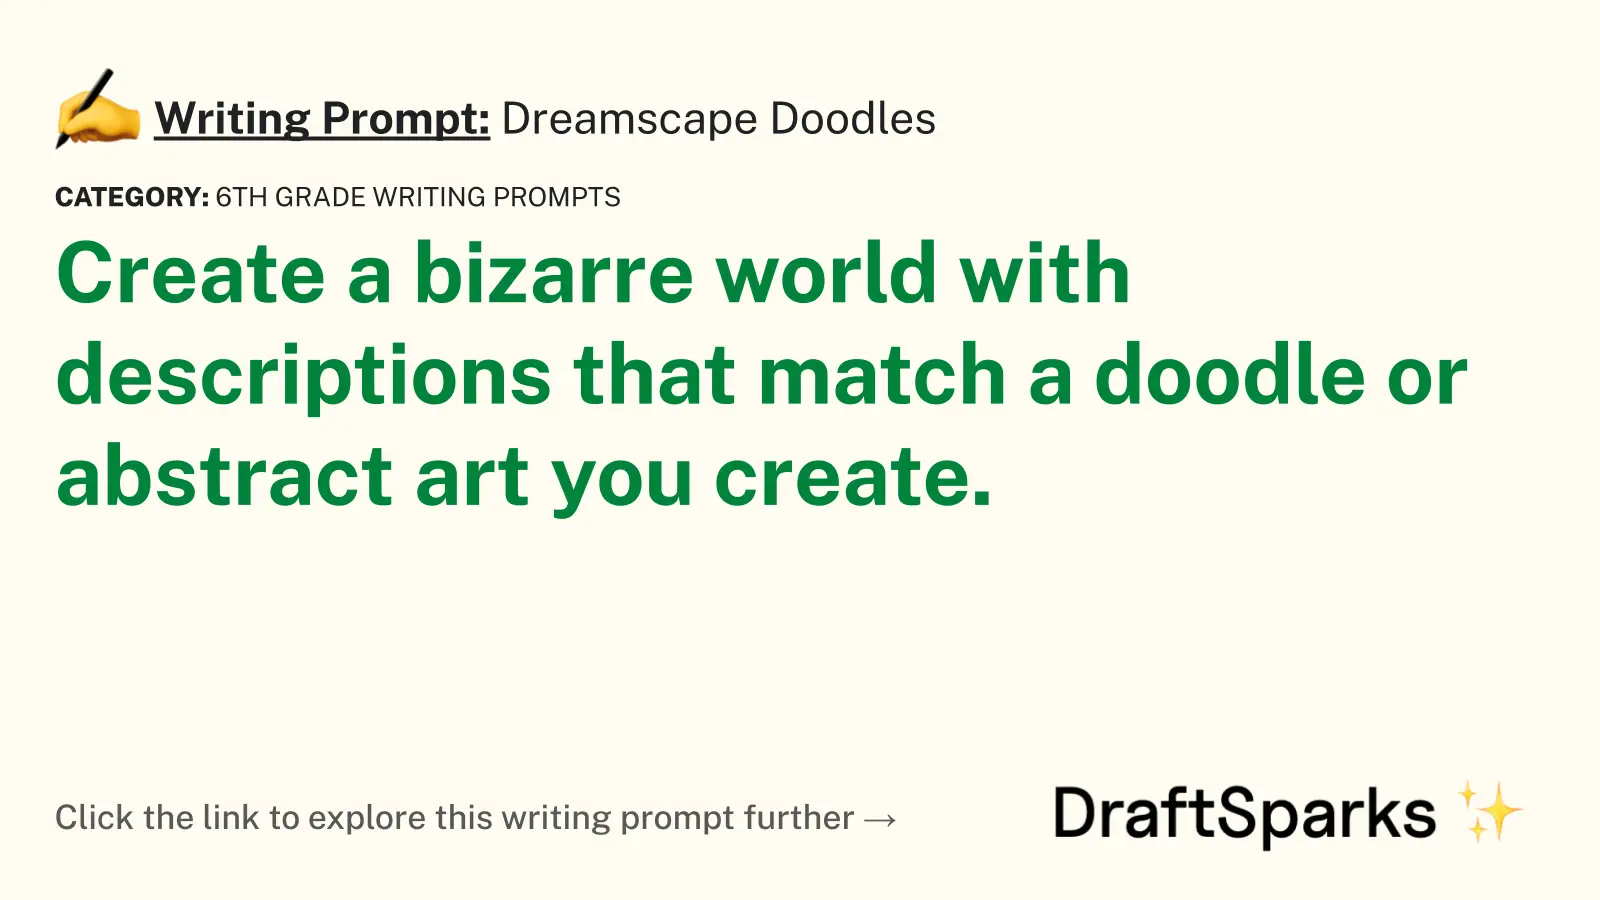 Dreamscape Doodles